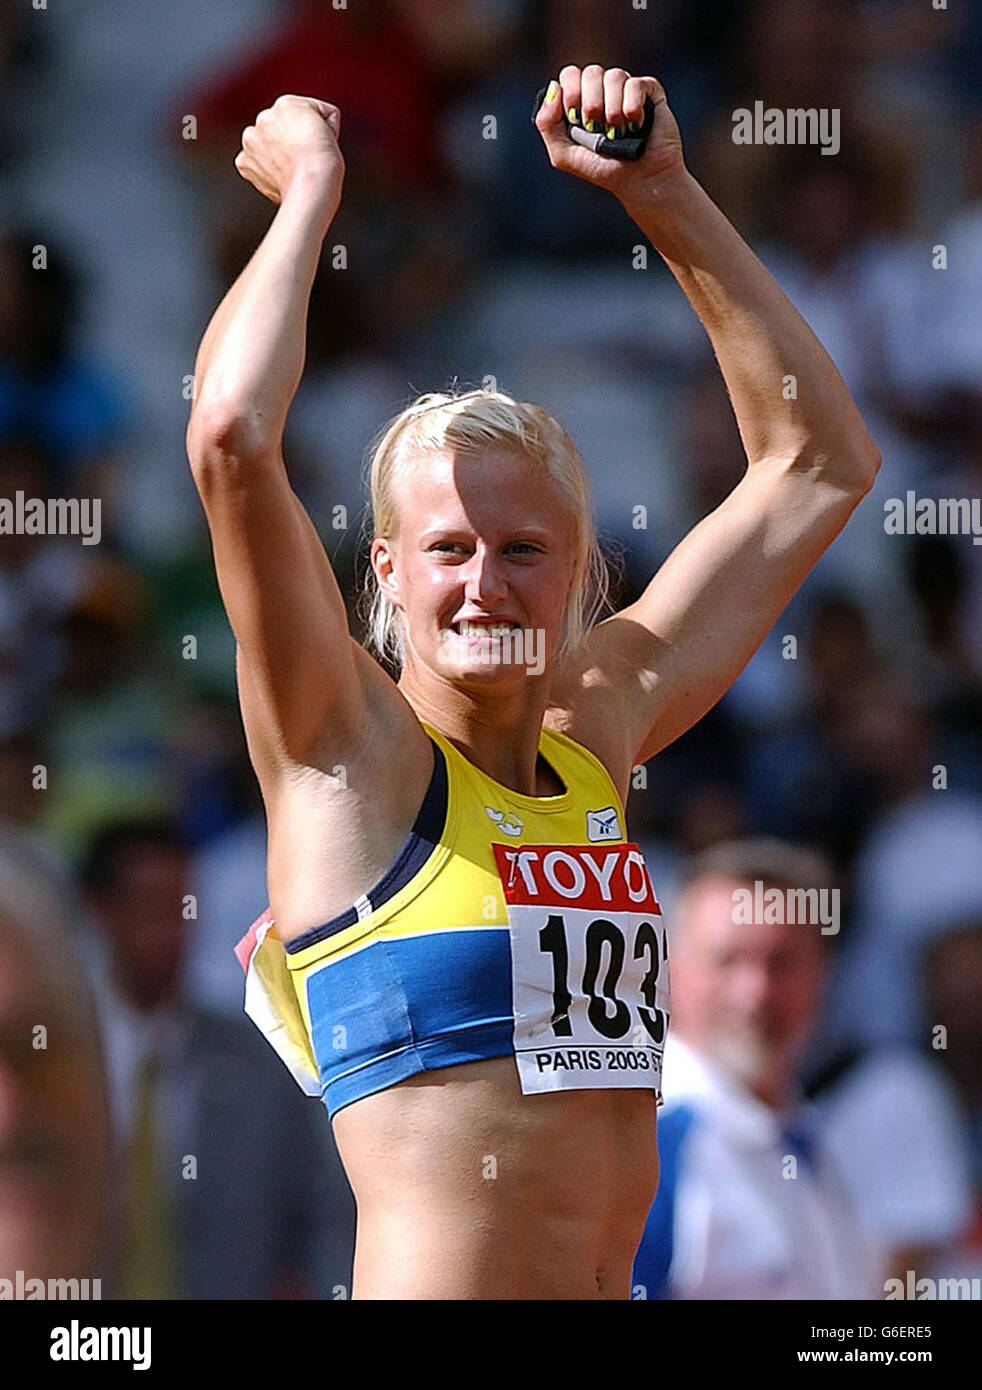 Die Schwedin Carolina Kluft feiert ihre persönliche Bestzeit im Schuss beim Frauen-Heptathlon-Event bei den IAAF Leichtathletik-Weltmeisterschaften in Paris. Stockfoto